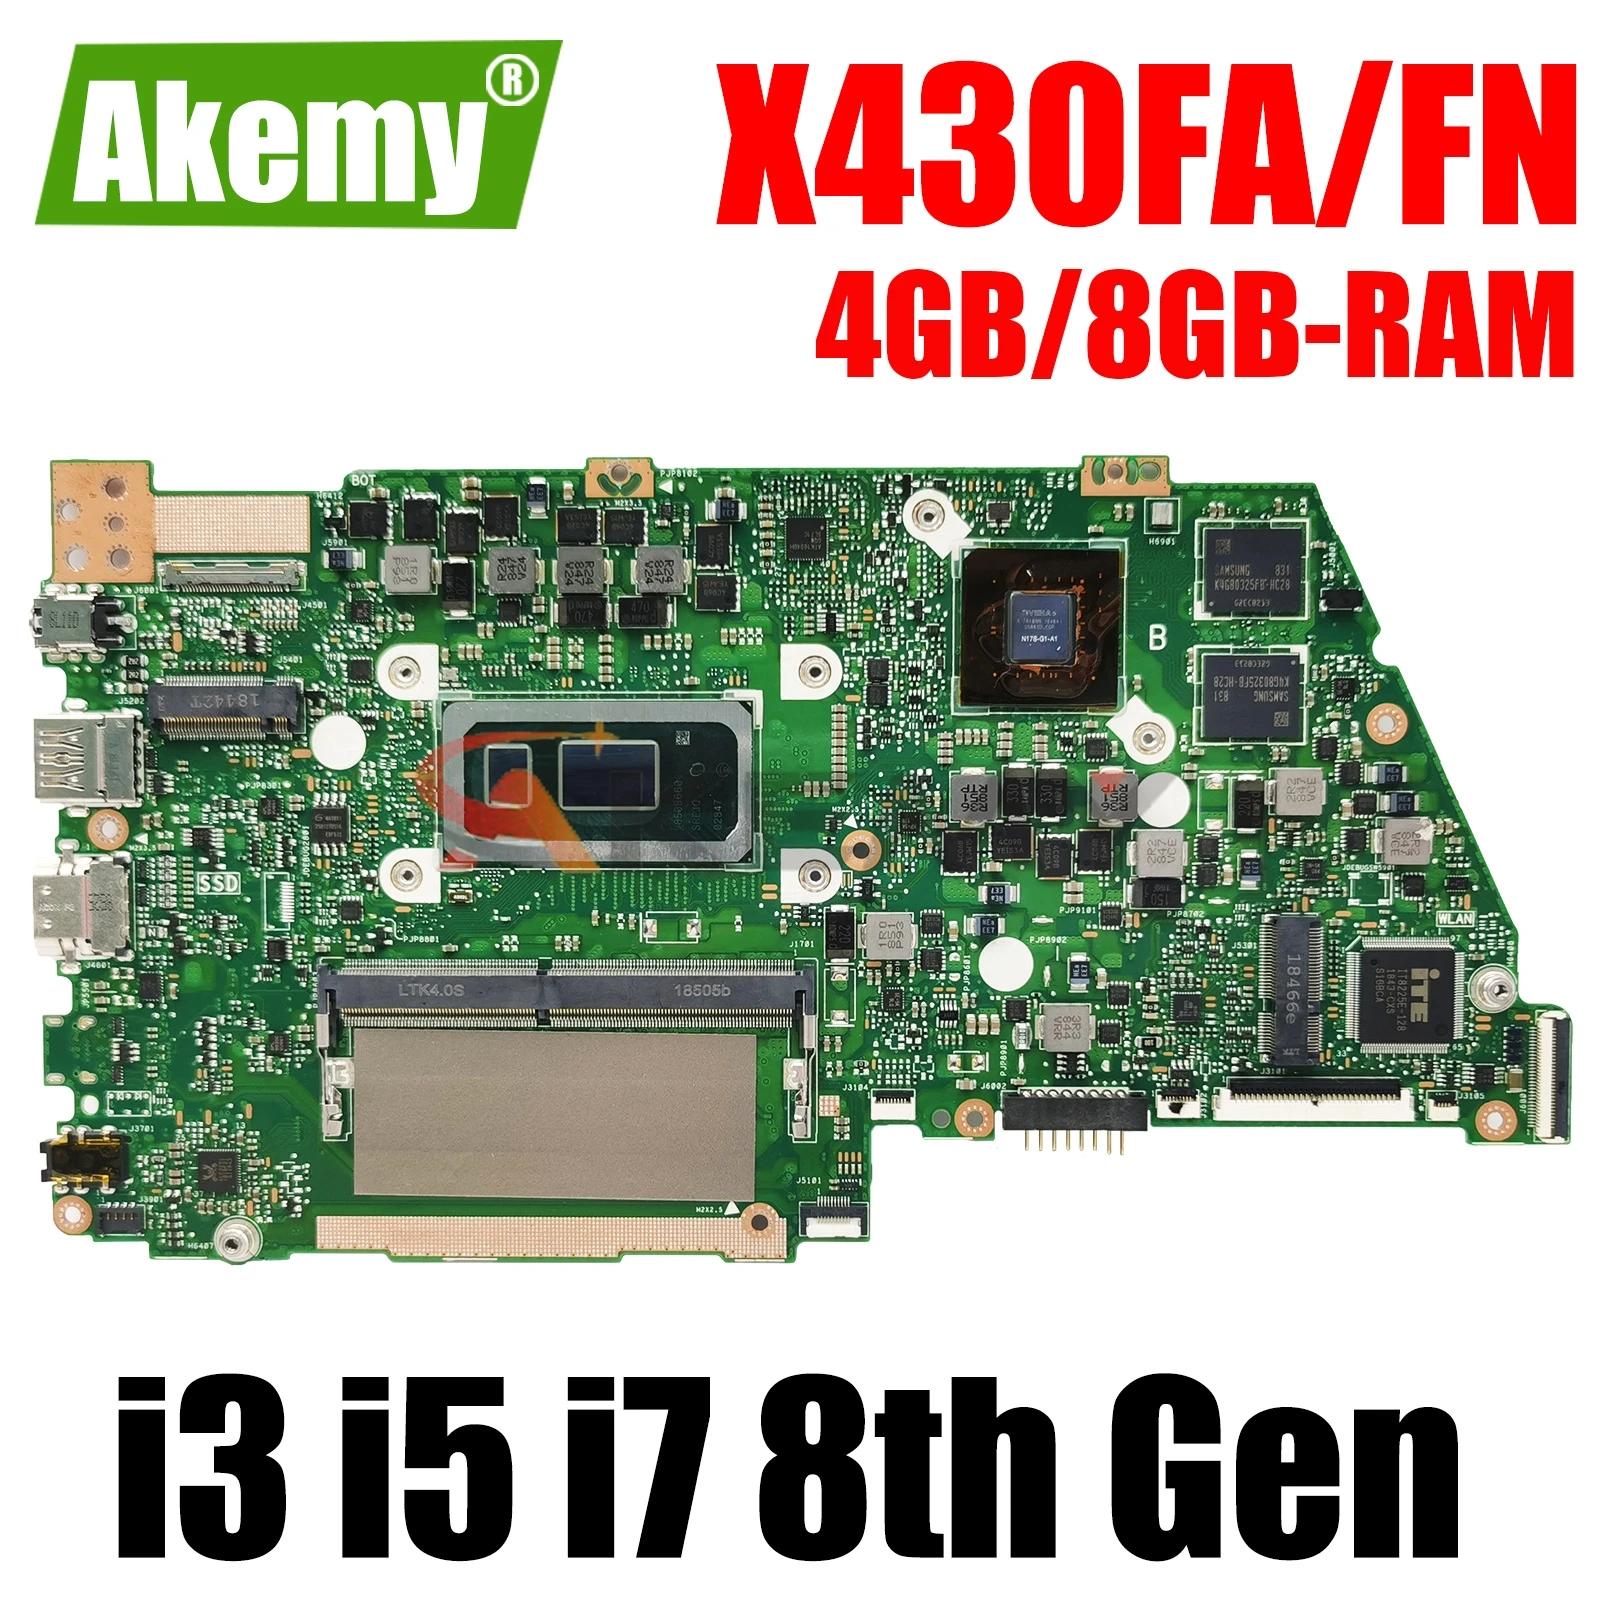 AKEMY Ʈ , ASUS X430FN, A430F, R430F, S4300F, S4300FN, X430F, V430F, K430F, CPU I3, I5, I7, 4G, 8G RAM